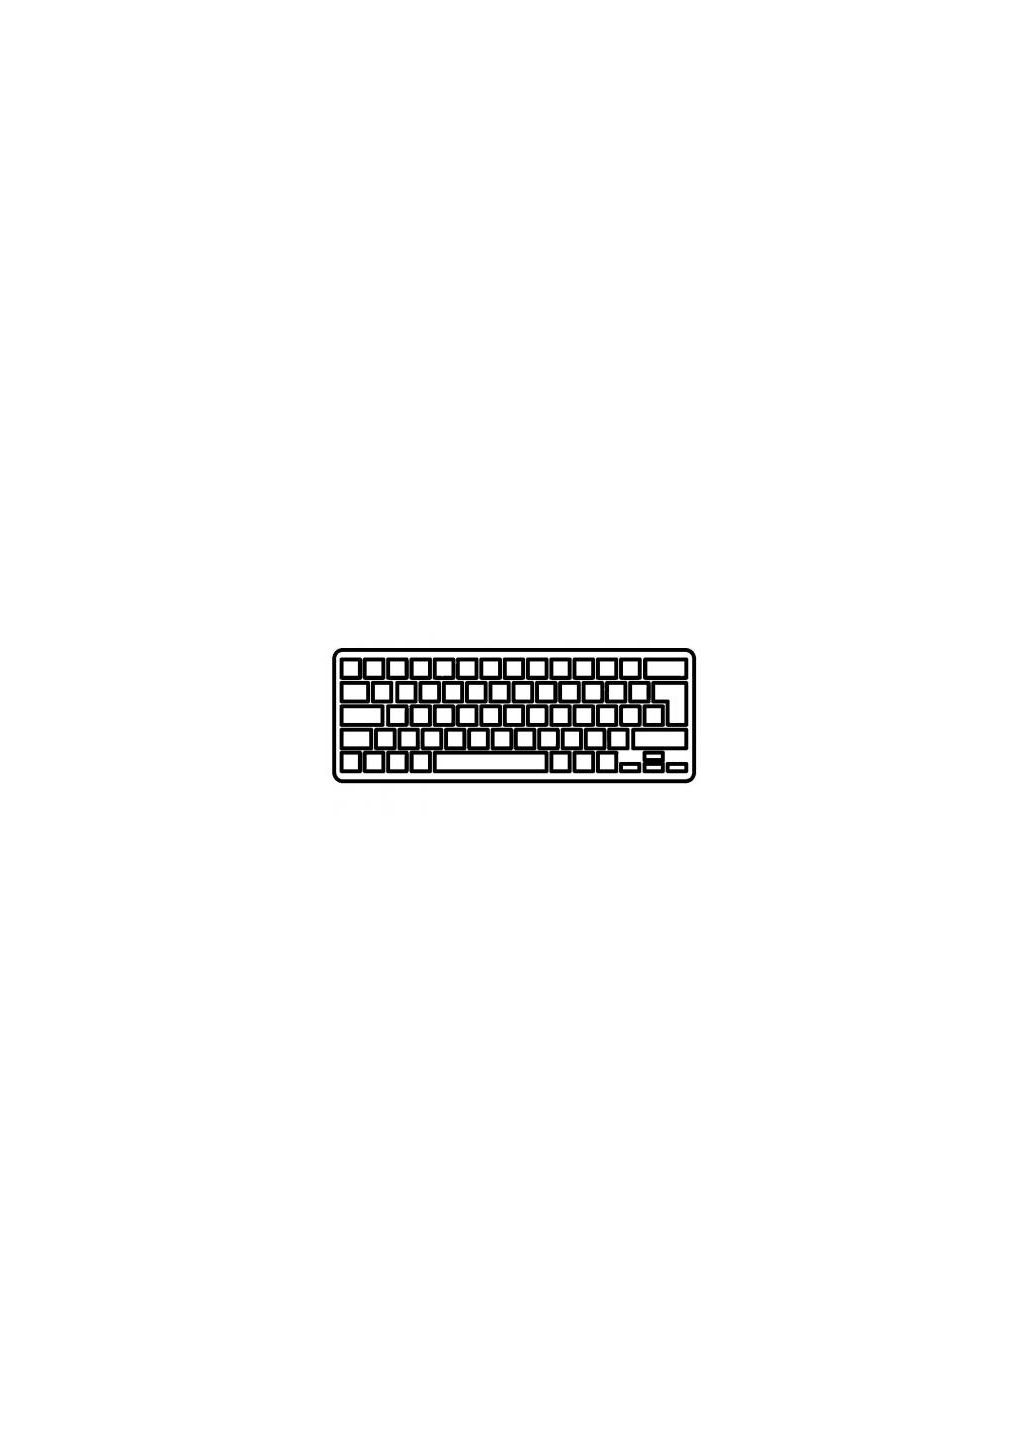 Клавиатура ноутбука UX31,UX31A,UX32,UX32A коричневая wo/frame,UA/US (A46033) Asus ux31, ux31a, ux32, ux32a коричневая wo/frame, ua/us (276707832)